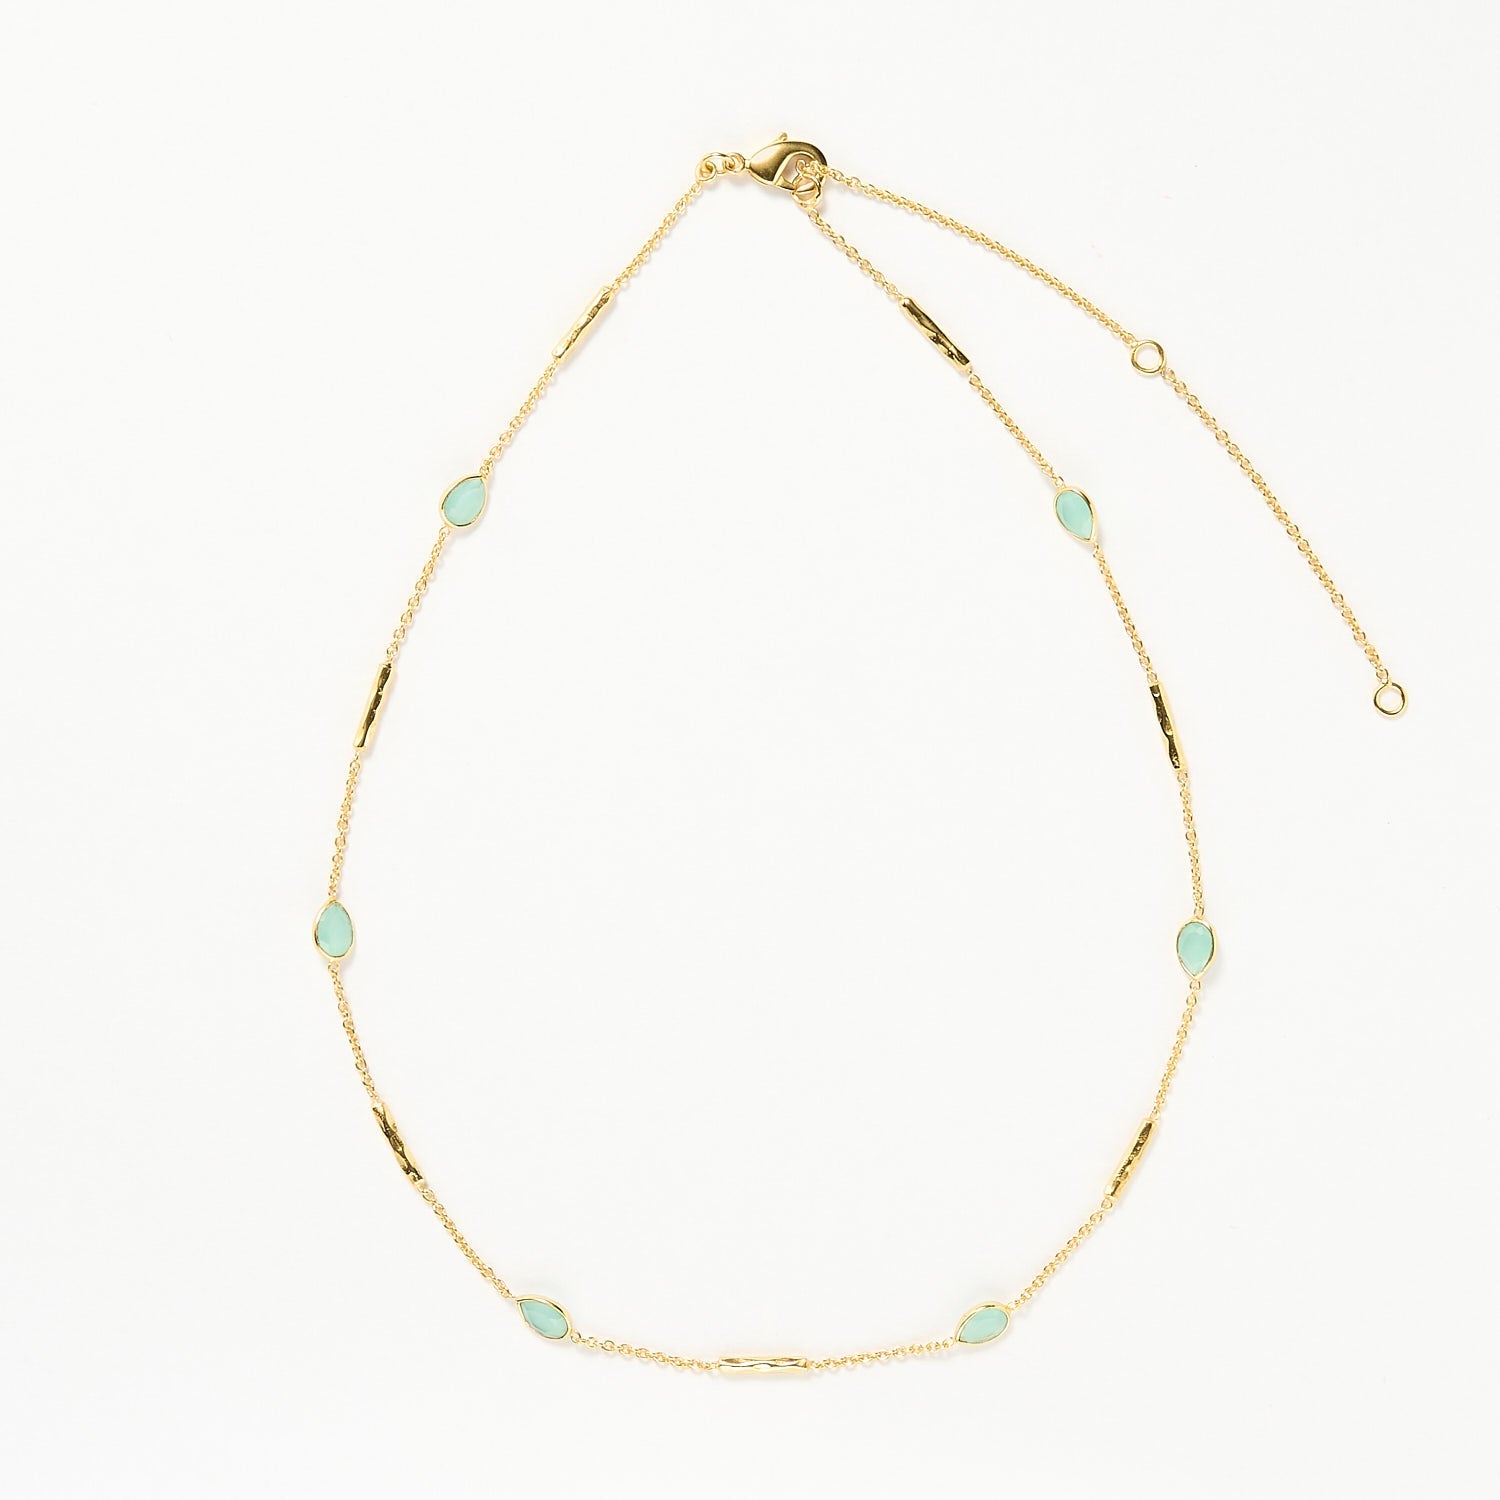 Maldives necklace - Aqua, Gold 